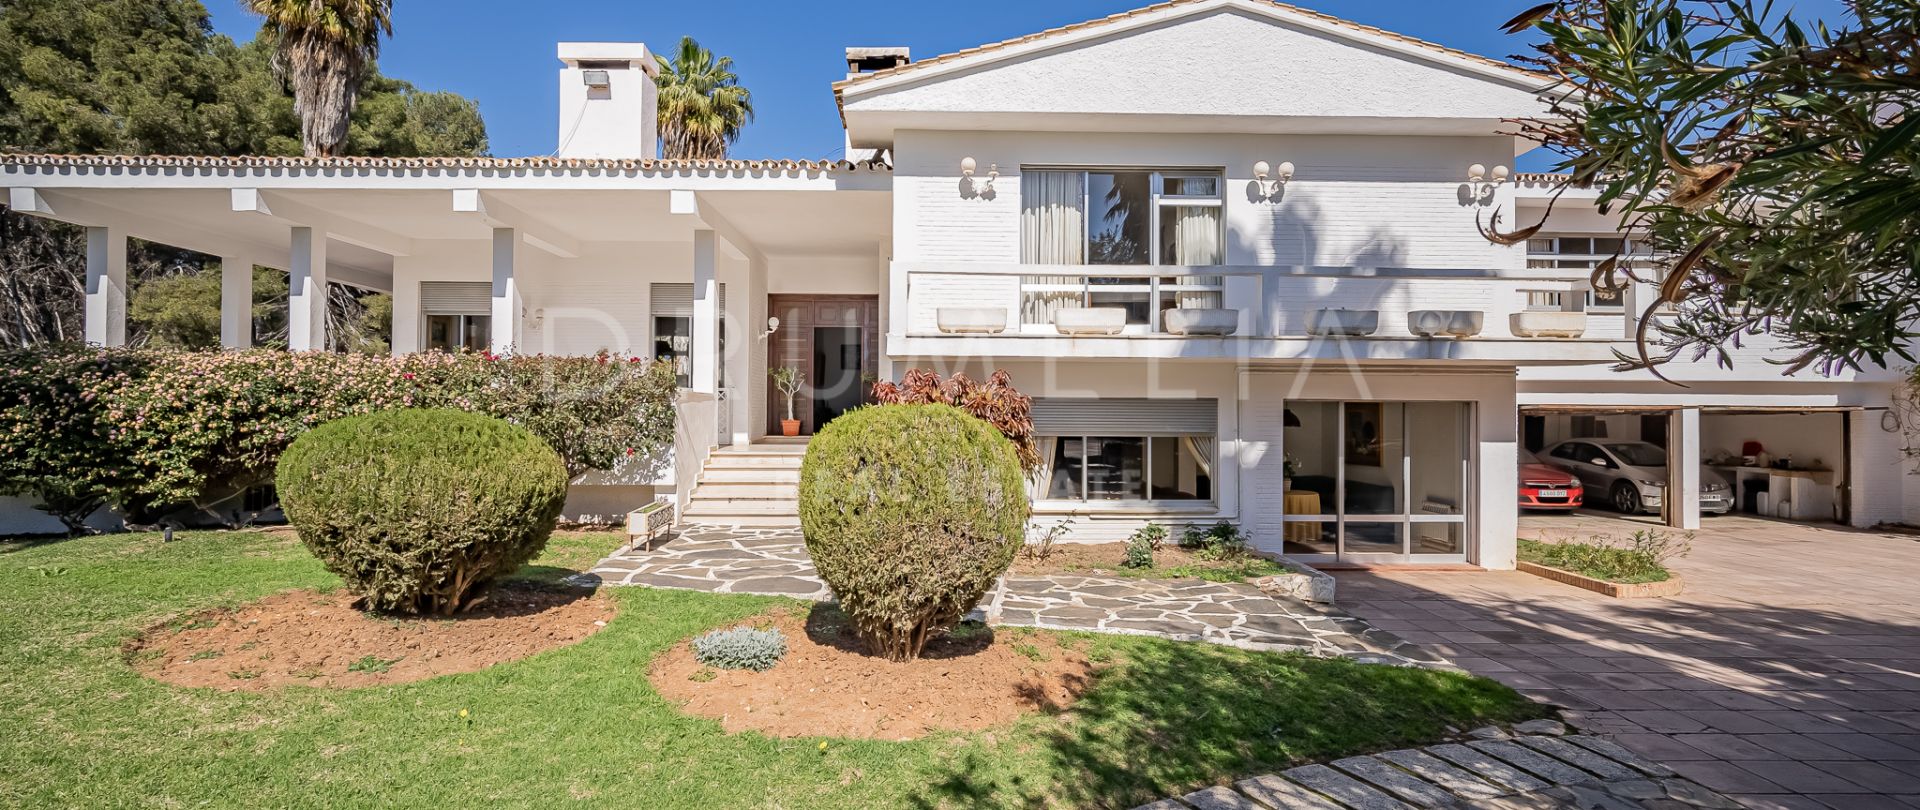 Villa for salg i El Mirador, Marbella by